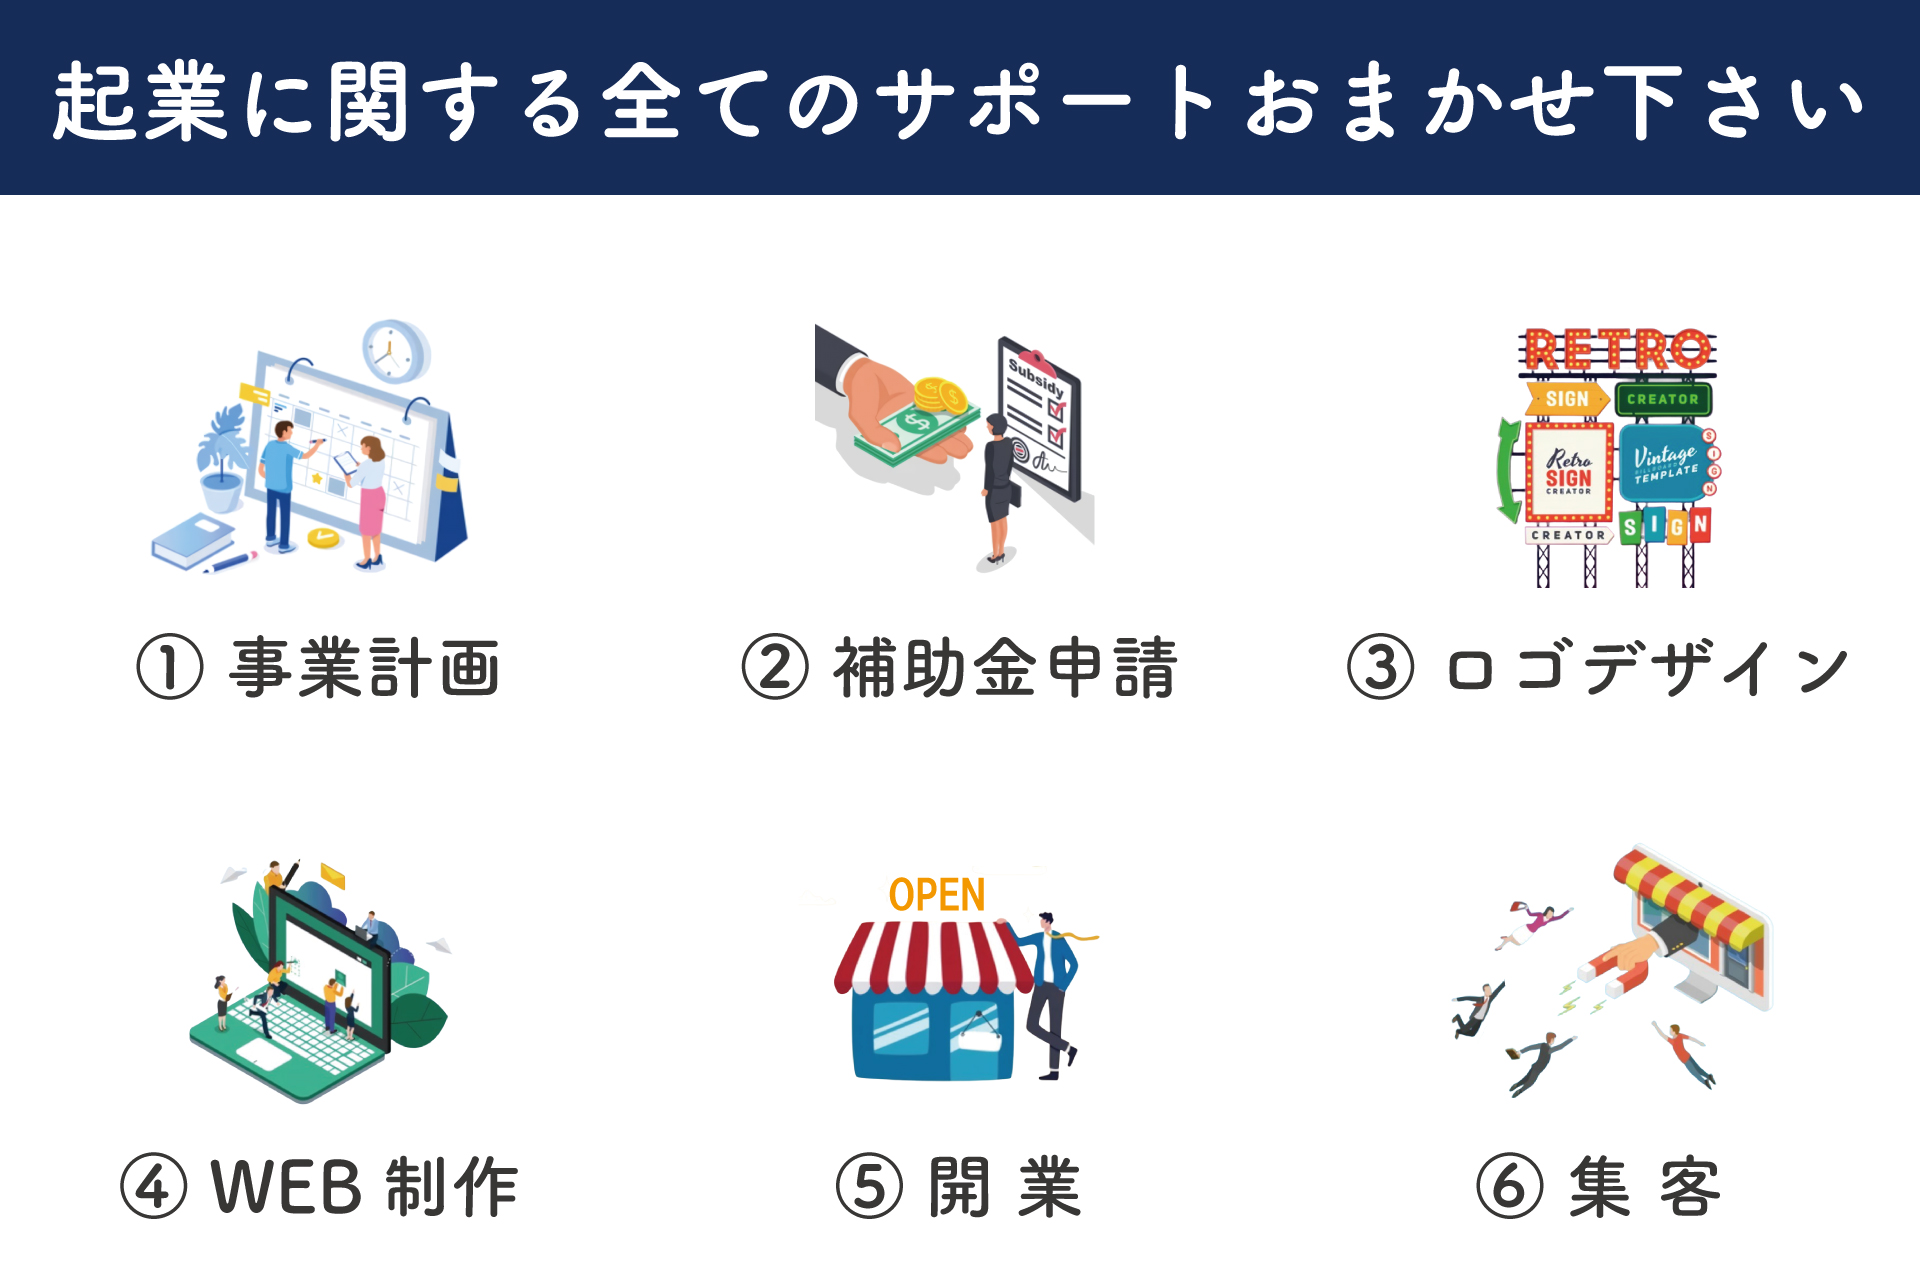 堺市全域創業サポートの説明画像